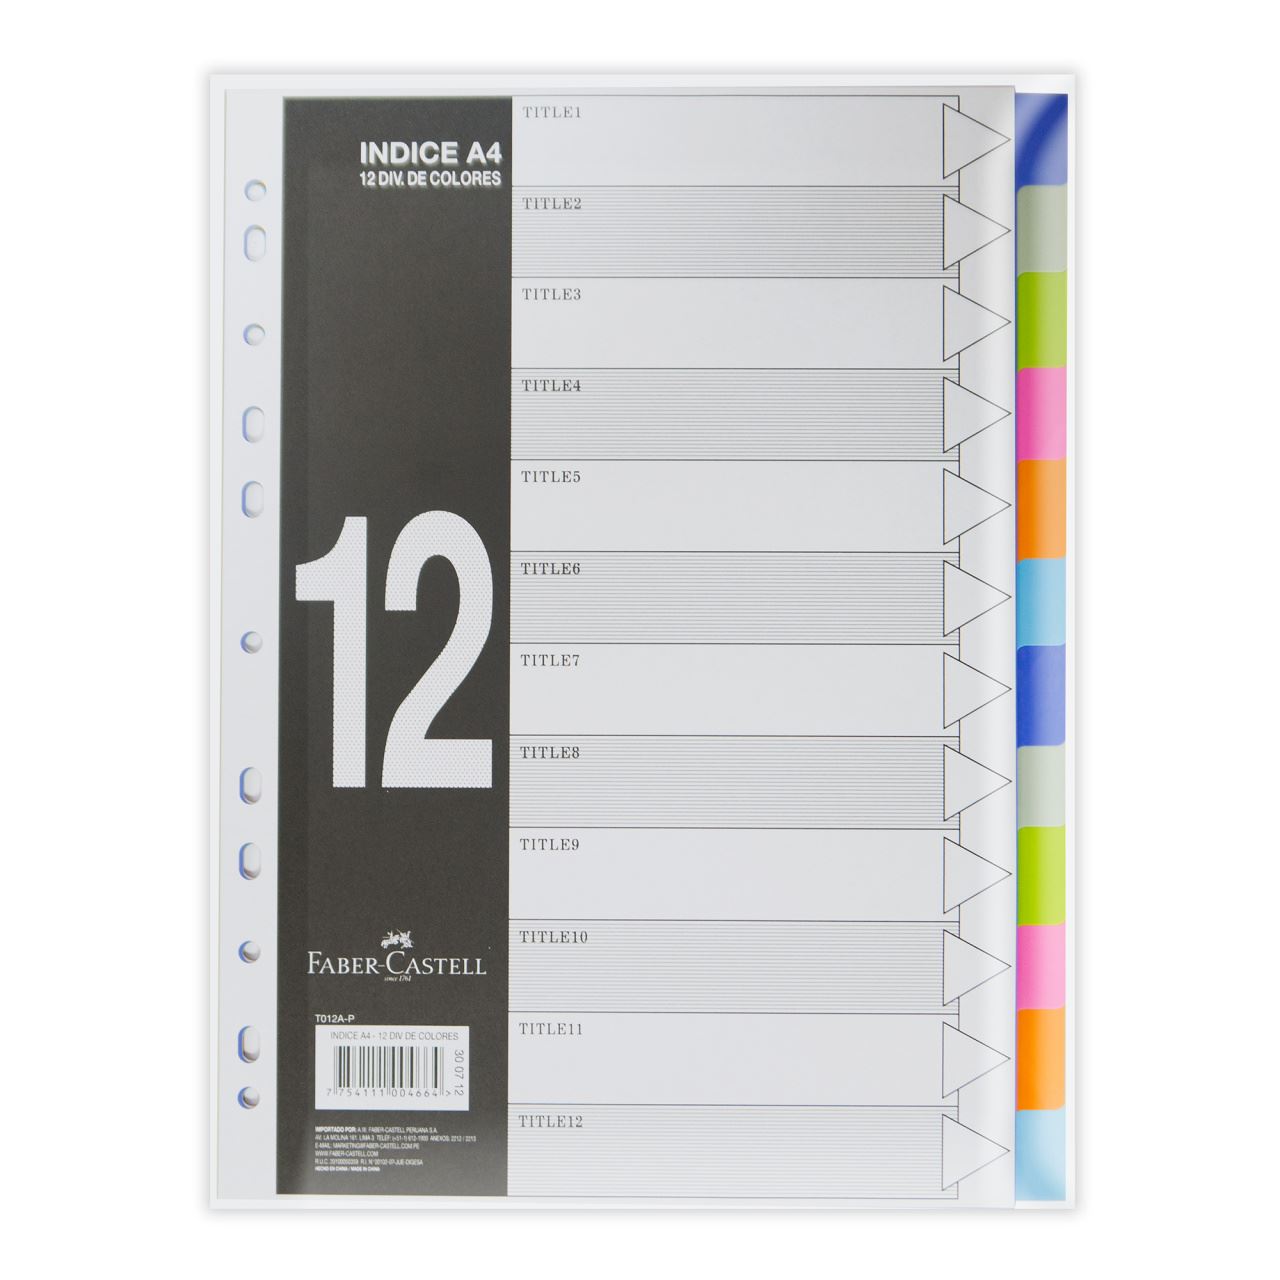 Faber-Castell - Índice T012A-P A4 con 12 divi de colores